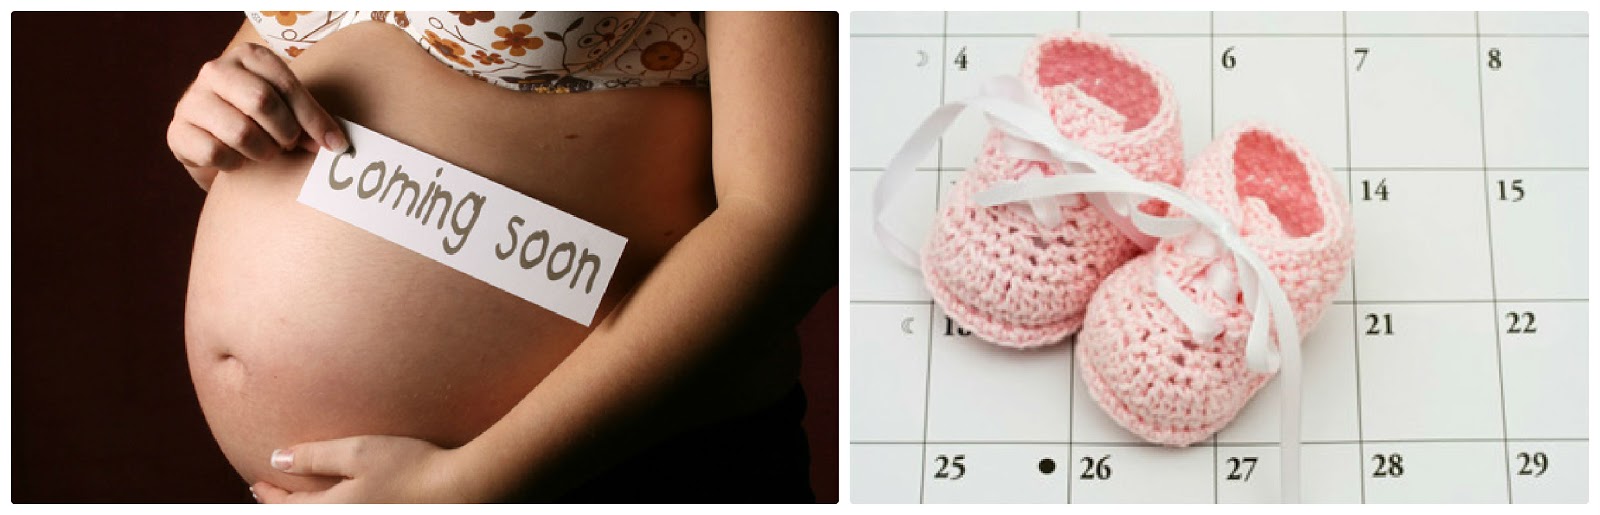 40 týden těhotenství, zápisky z těhotenství